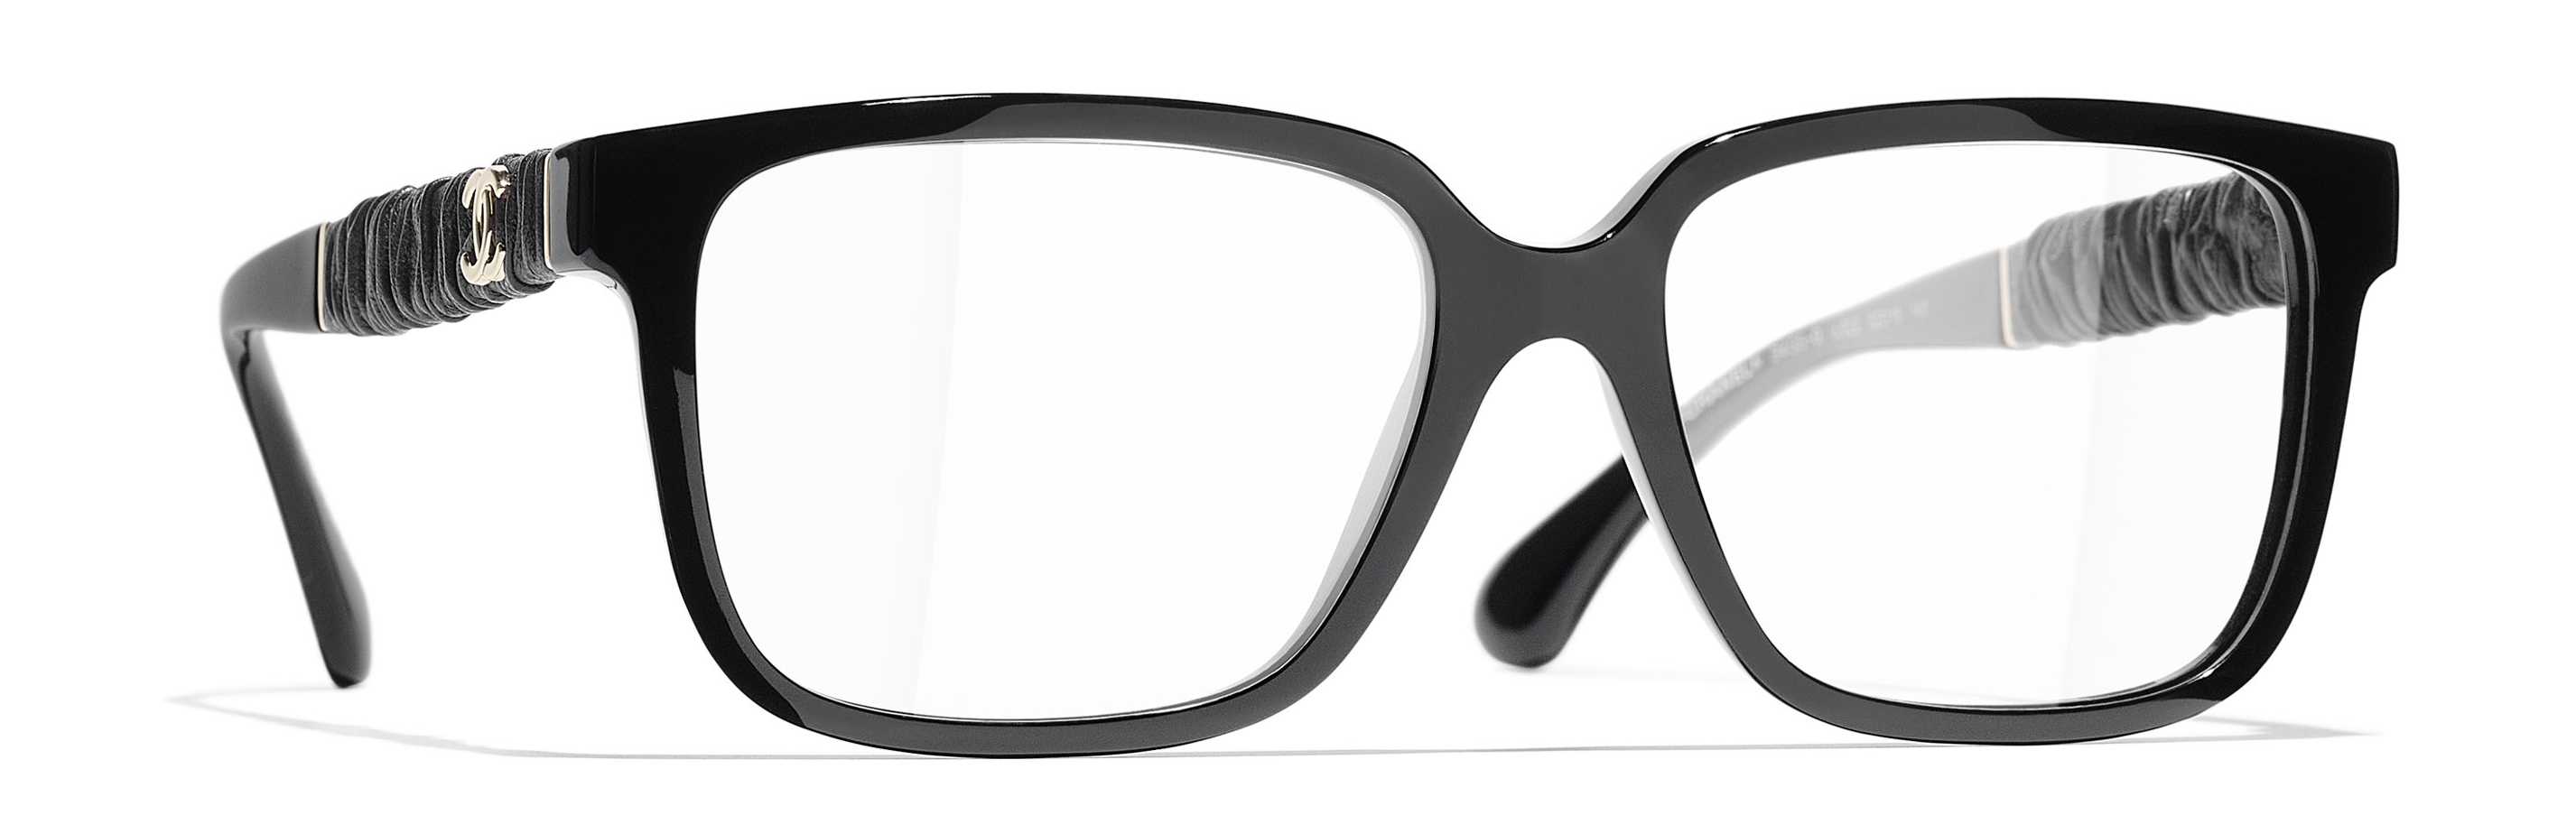 Eyeglasses CHANEL CH 3435Q C622 54/16 Woman Noir square frames Full Frame  Glasses trendy 54mmx16mm 502$CA